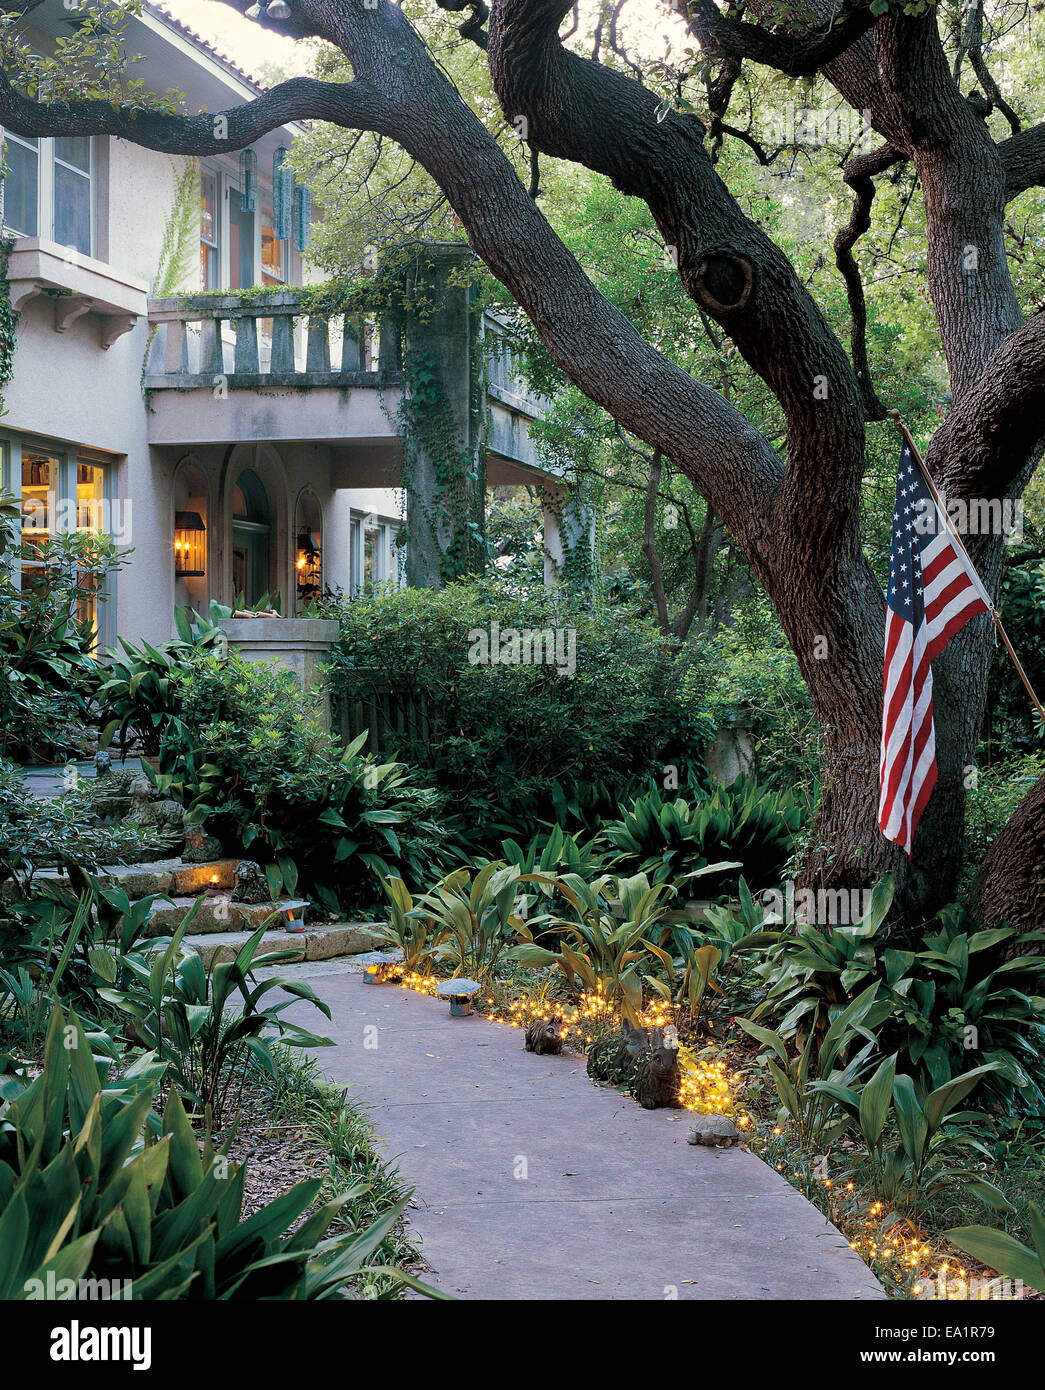 beleuchteten Gartenweg mit amerikanischen Flagge führt zu Haustür von Haus aus Stein Stockfoto